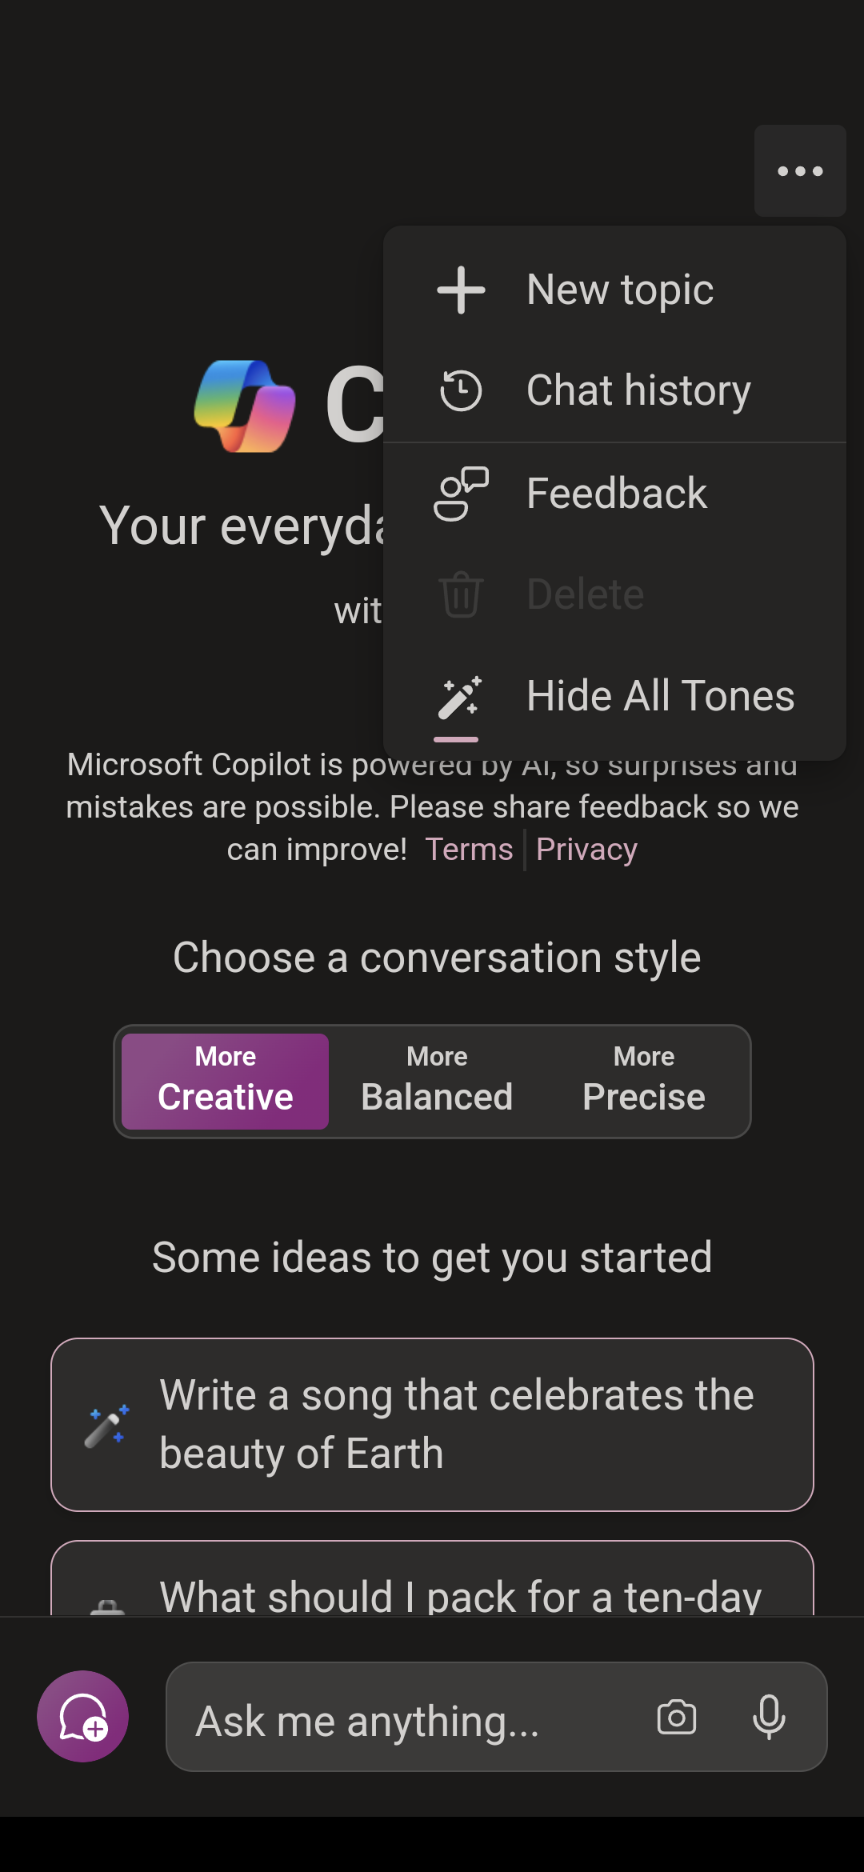 Todos os três estilos de conversa agora são mostrados no aplicativo Android do Microsoft Copilot